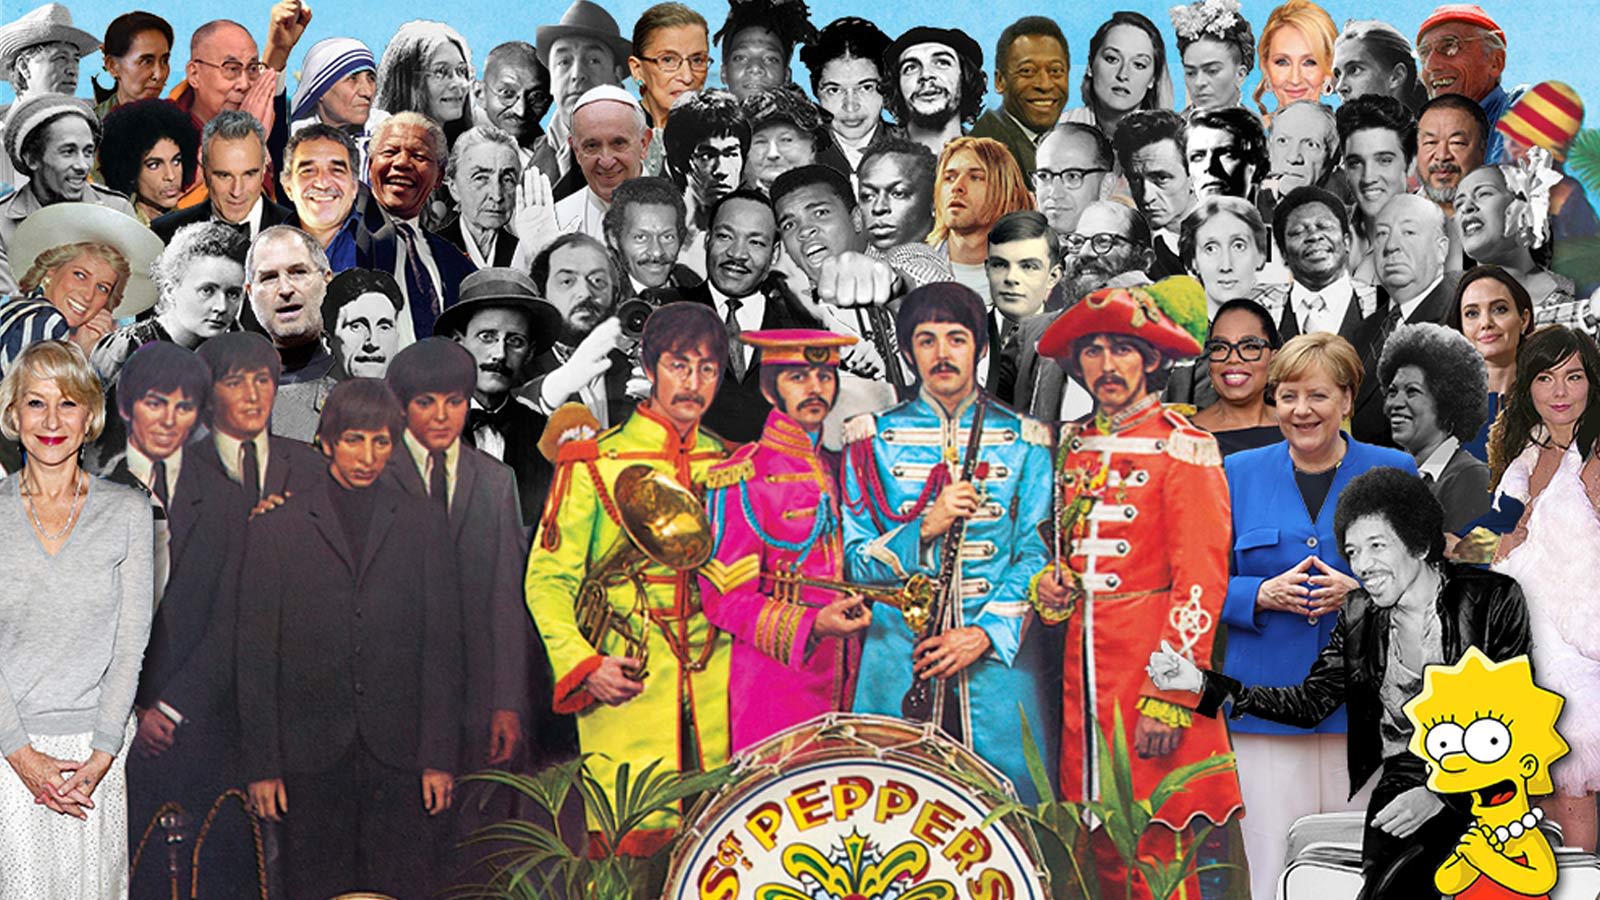 Beatles sgt peppers lonely hearts club. Клуб одиноких сердец сержанта Пеппера. The Beatles Sgt. Pepper's Lonely Hearts Club Band 1967. Битлз Sgt Pepper s Lonely Hearts Club Band. Сержант Пеппер (Sgt Pepper`s.